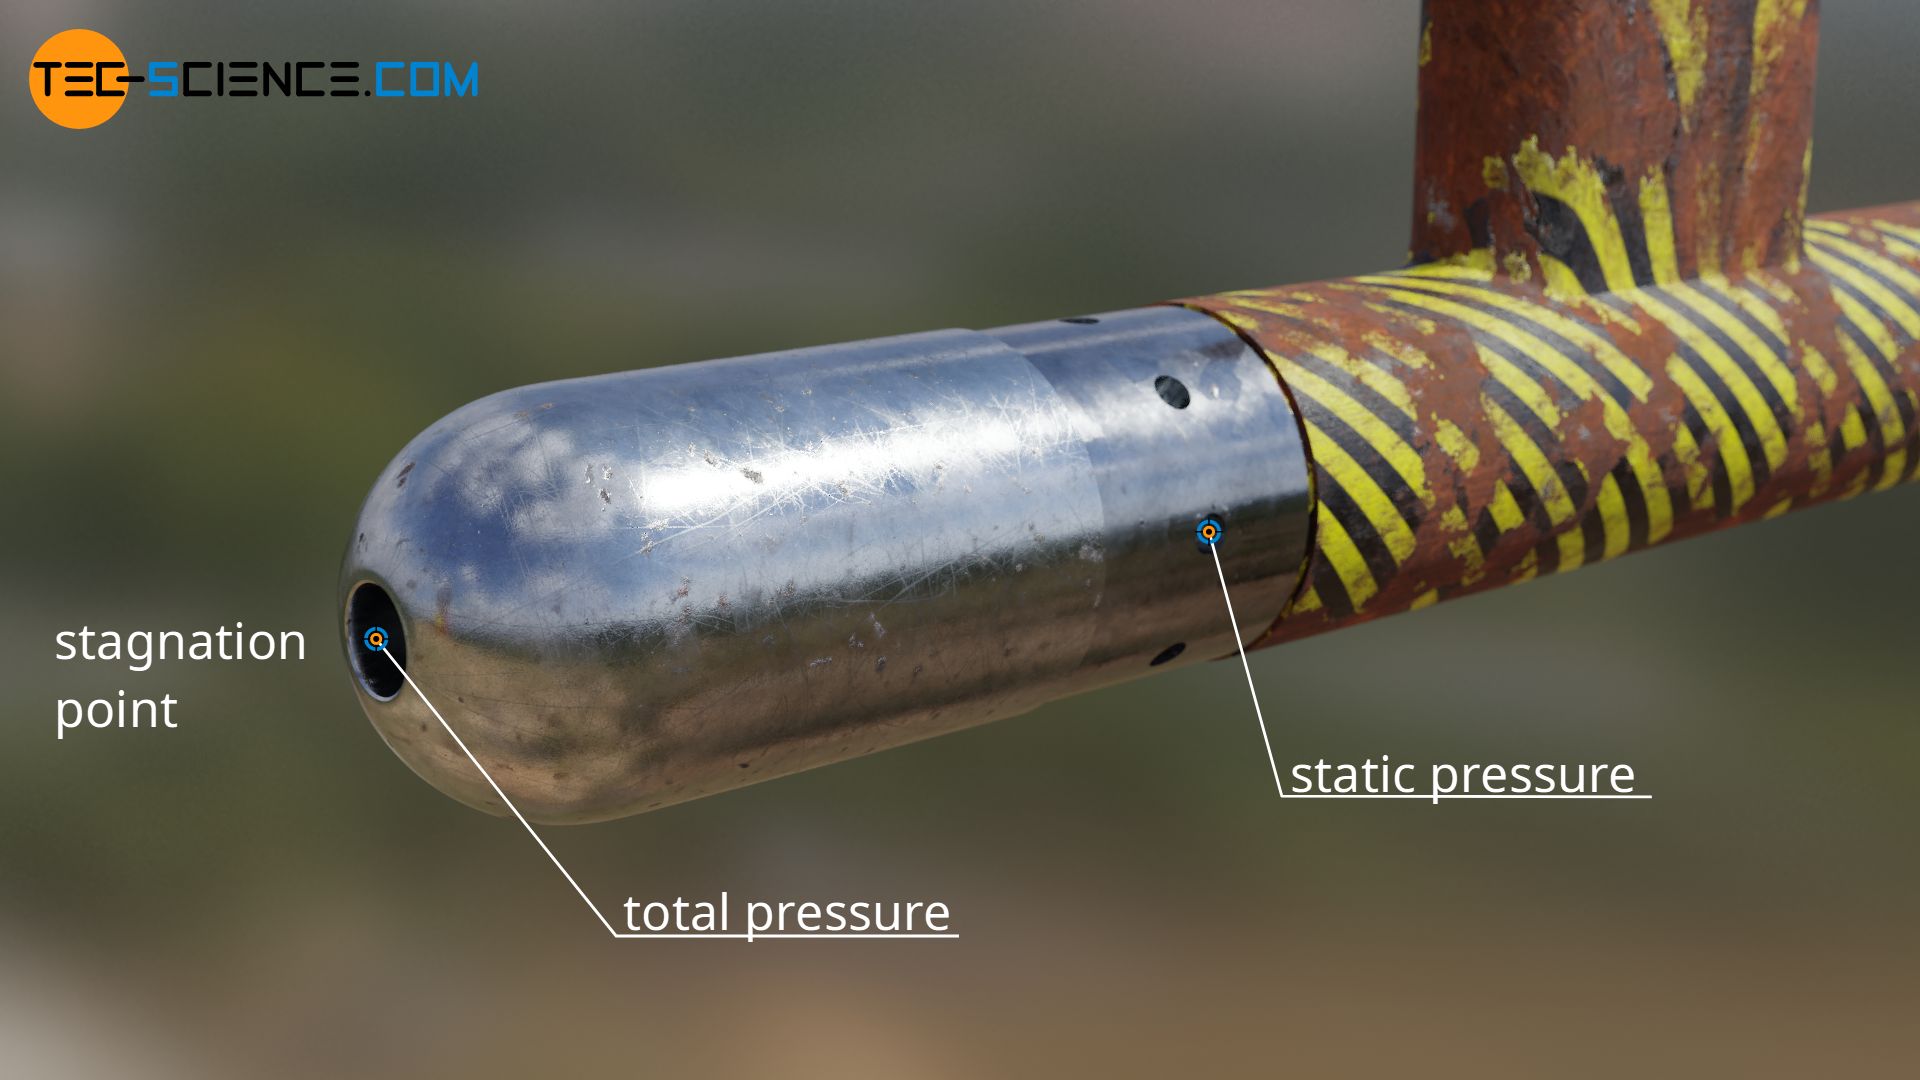 Prandtl tube (dynamic pressure probe)